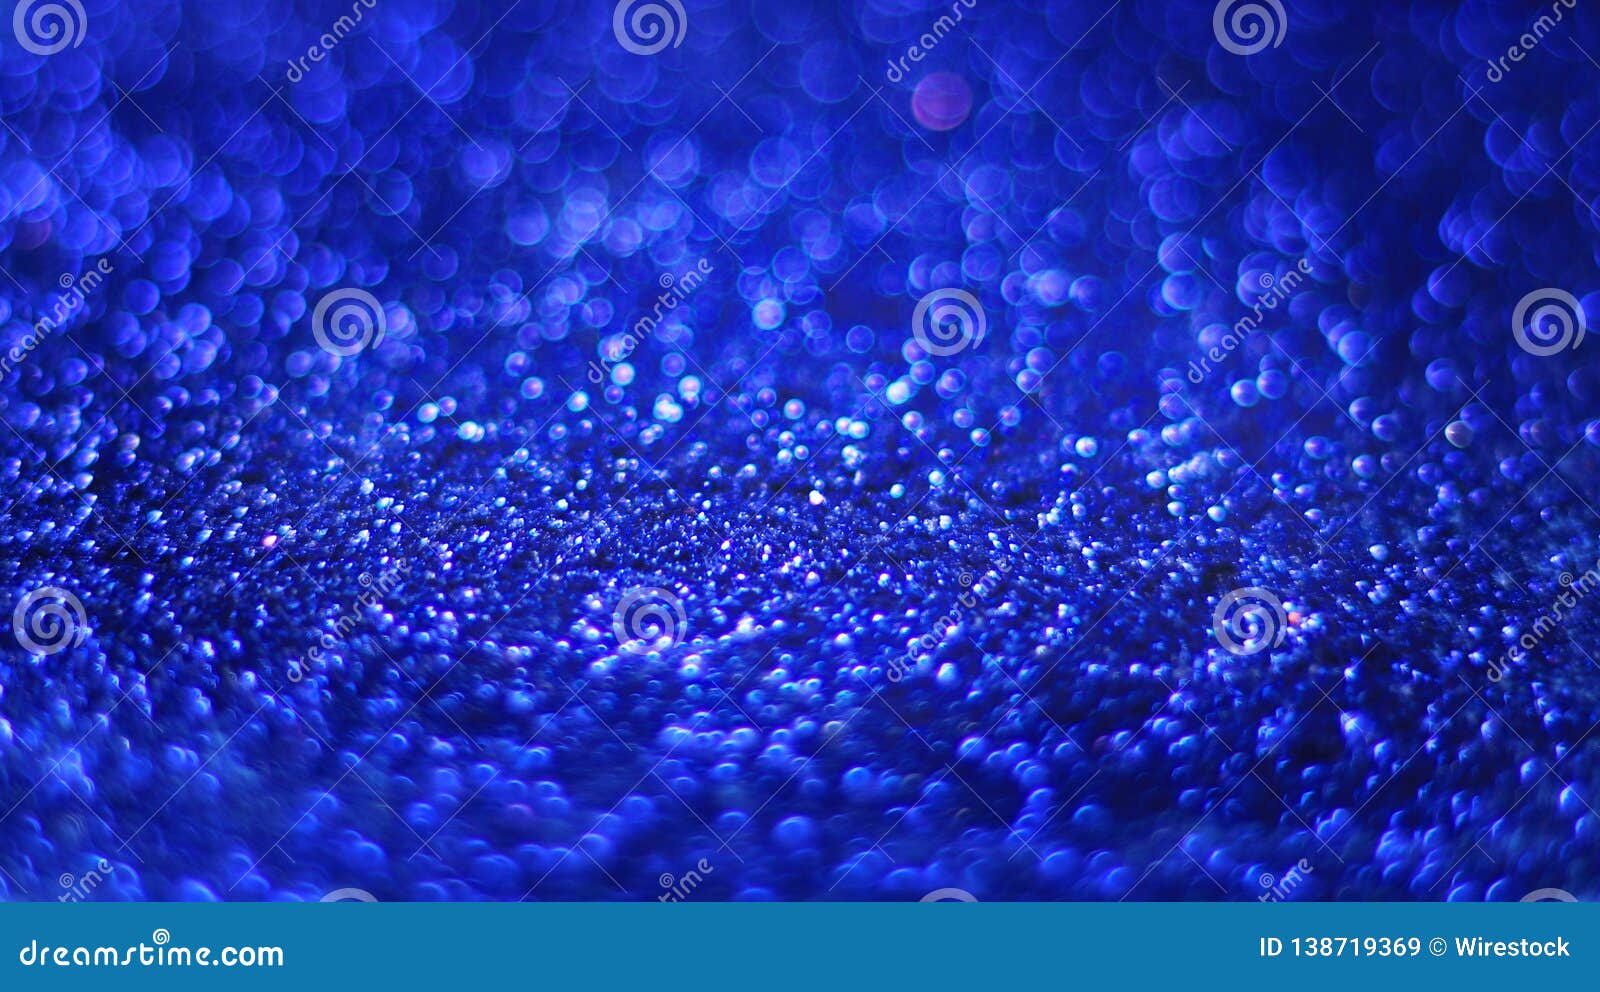 26+] Dark Royal Blue Wallpapers - WallpaperSafari